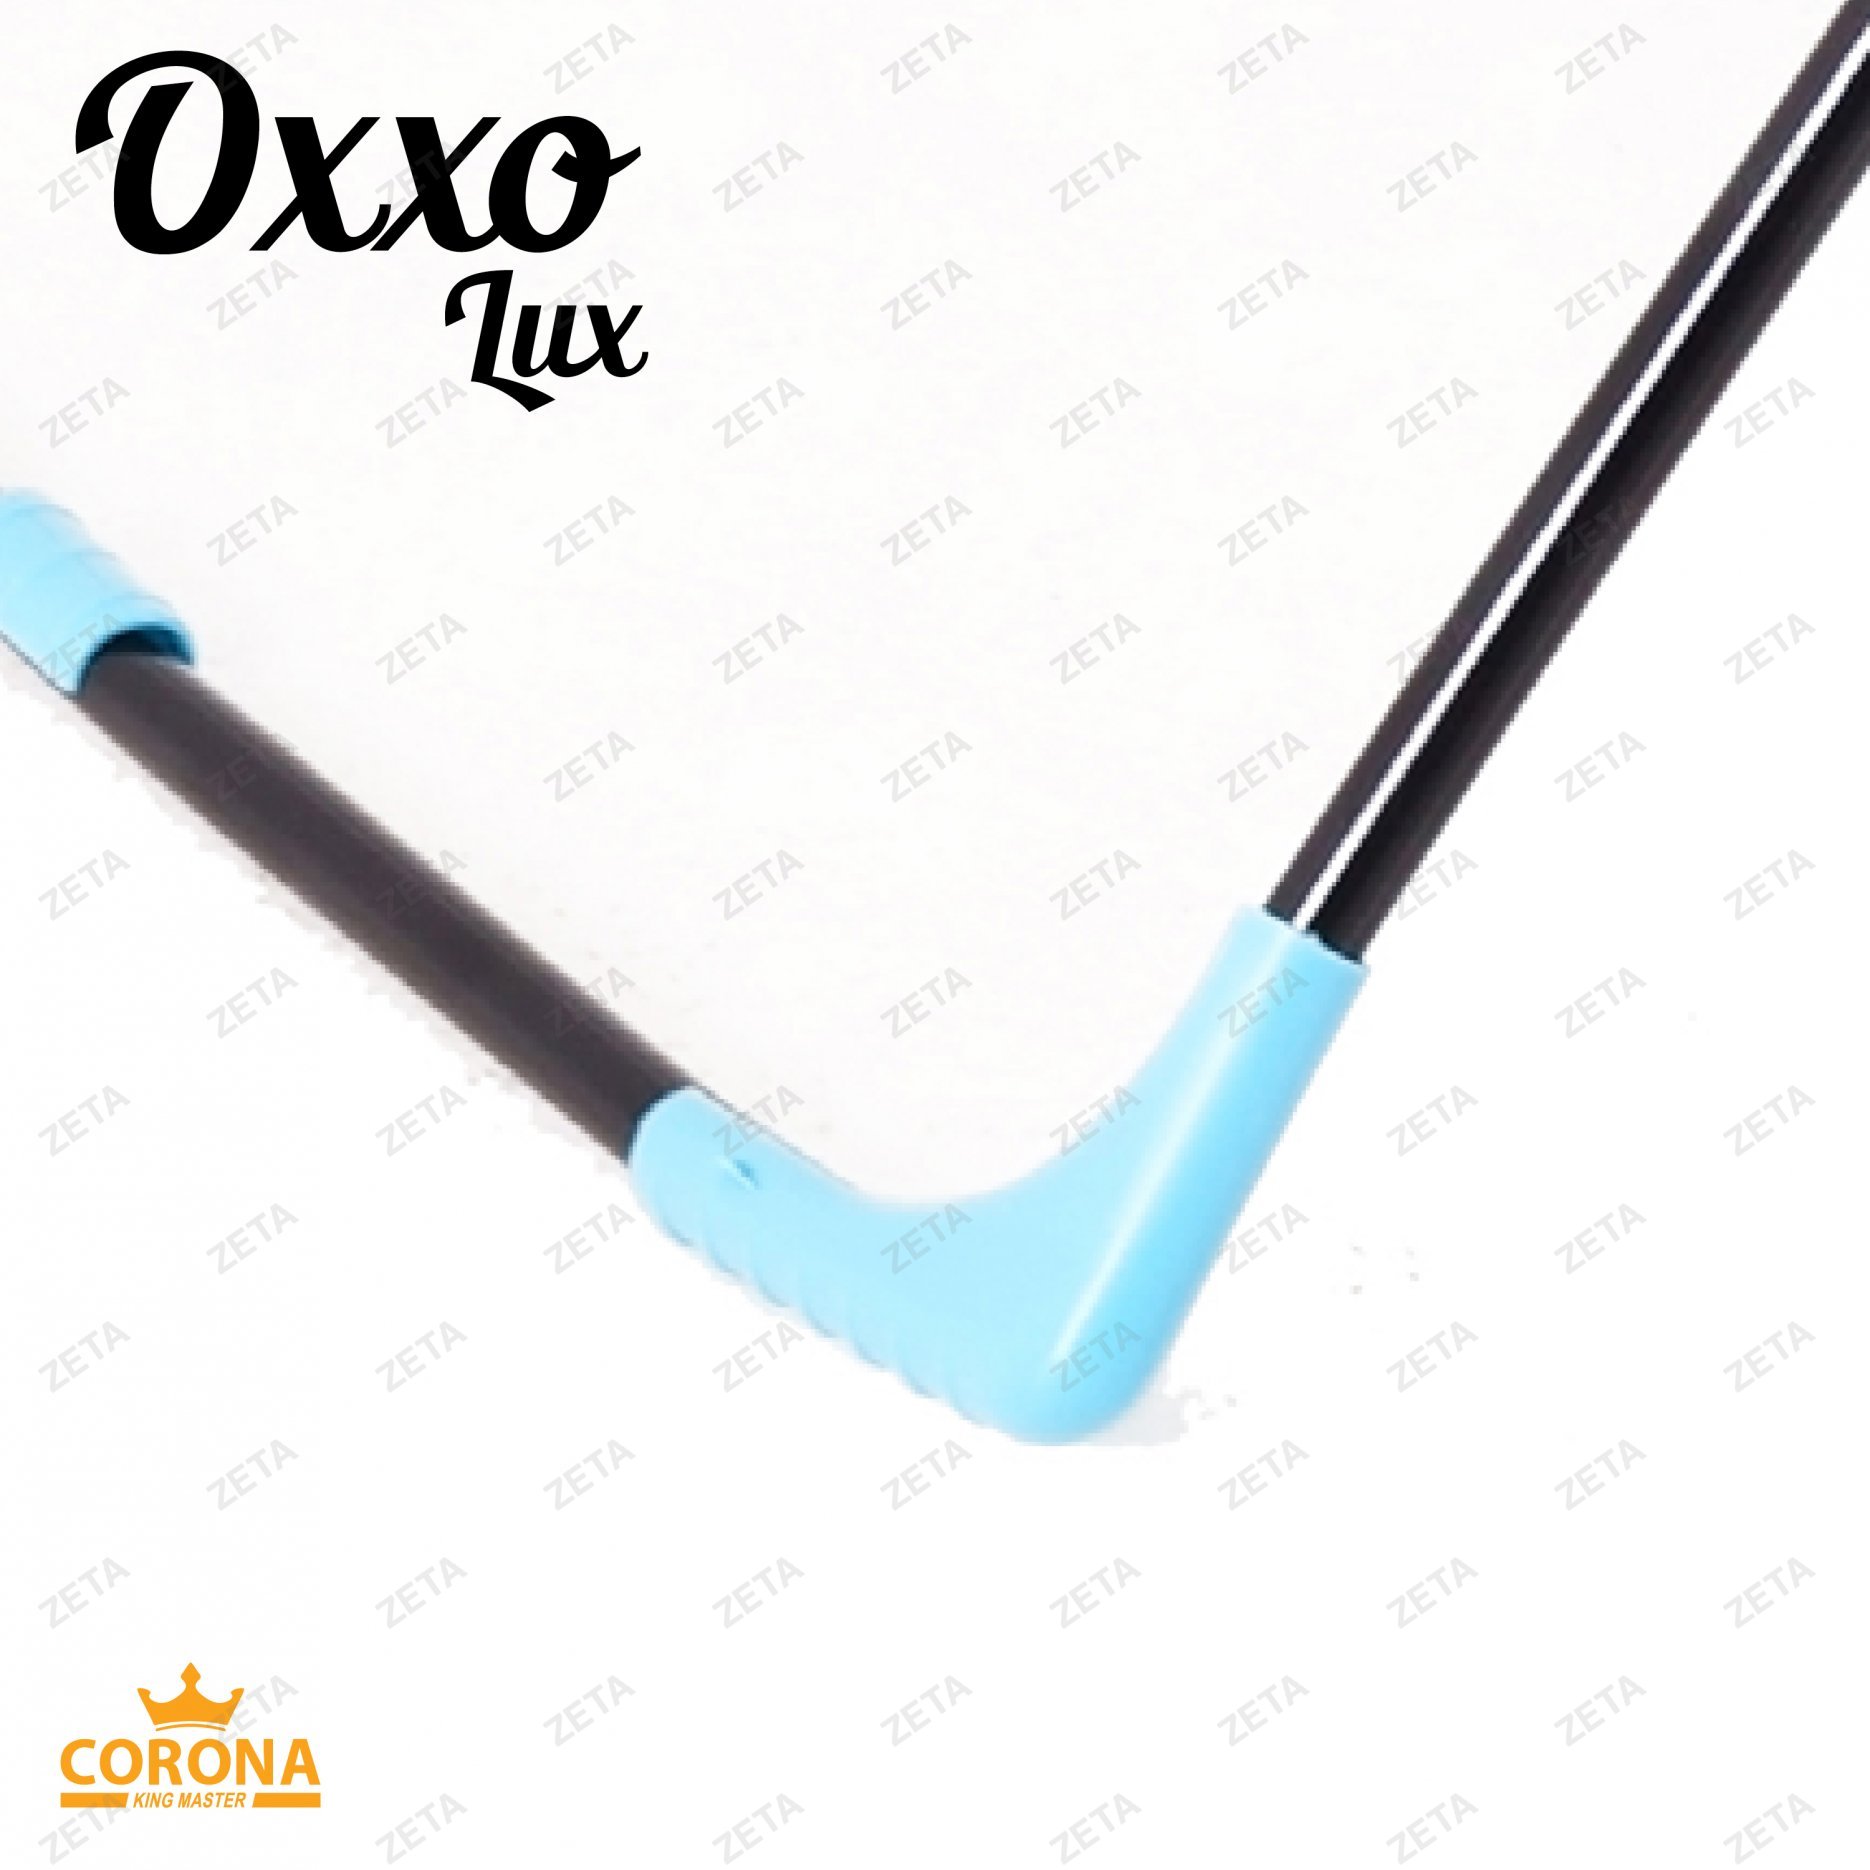 Сушилка для белья "Oxxo lux" №KRT/17-002 - изображение 6